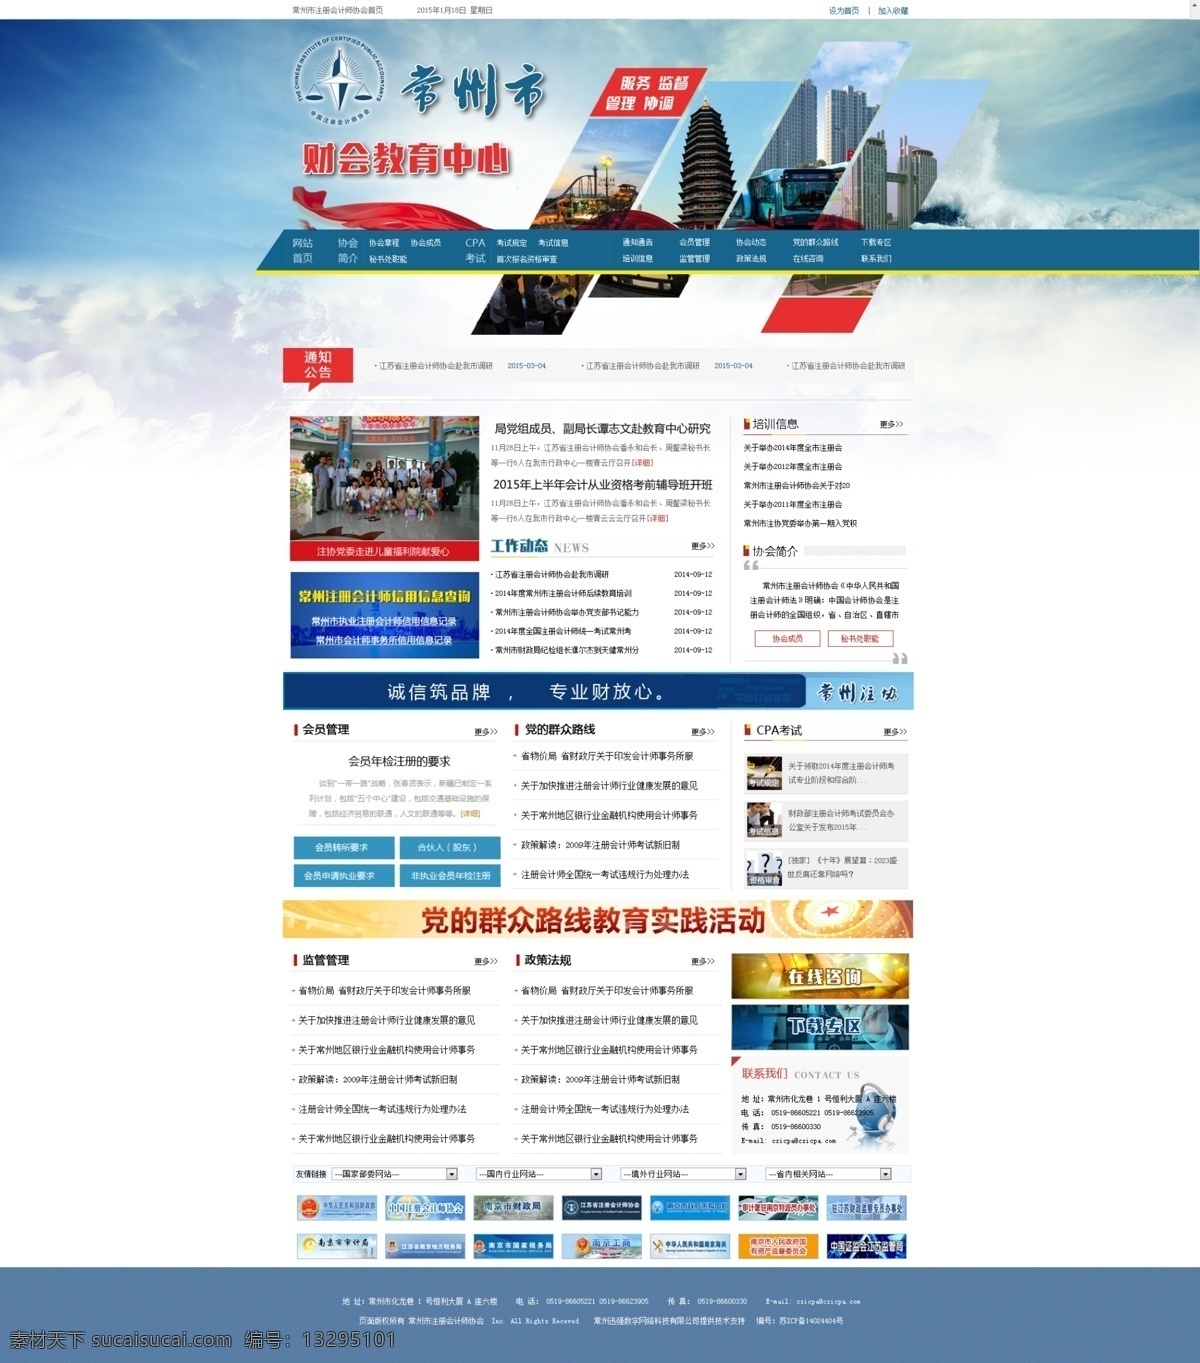 企业网站 中文网站 蓝色网站 模板网站 模板 政府网站 web 界面设计 中文模板